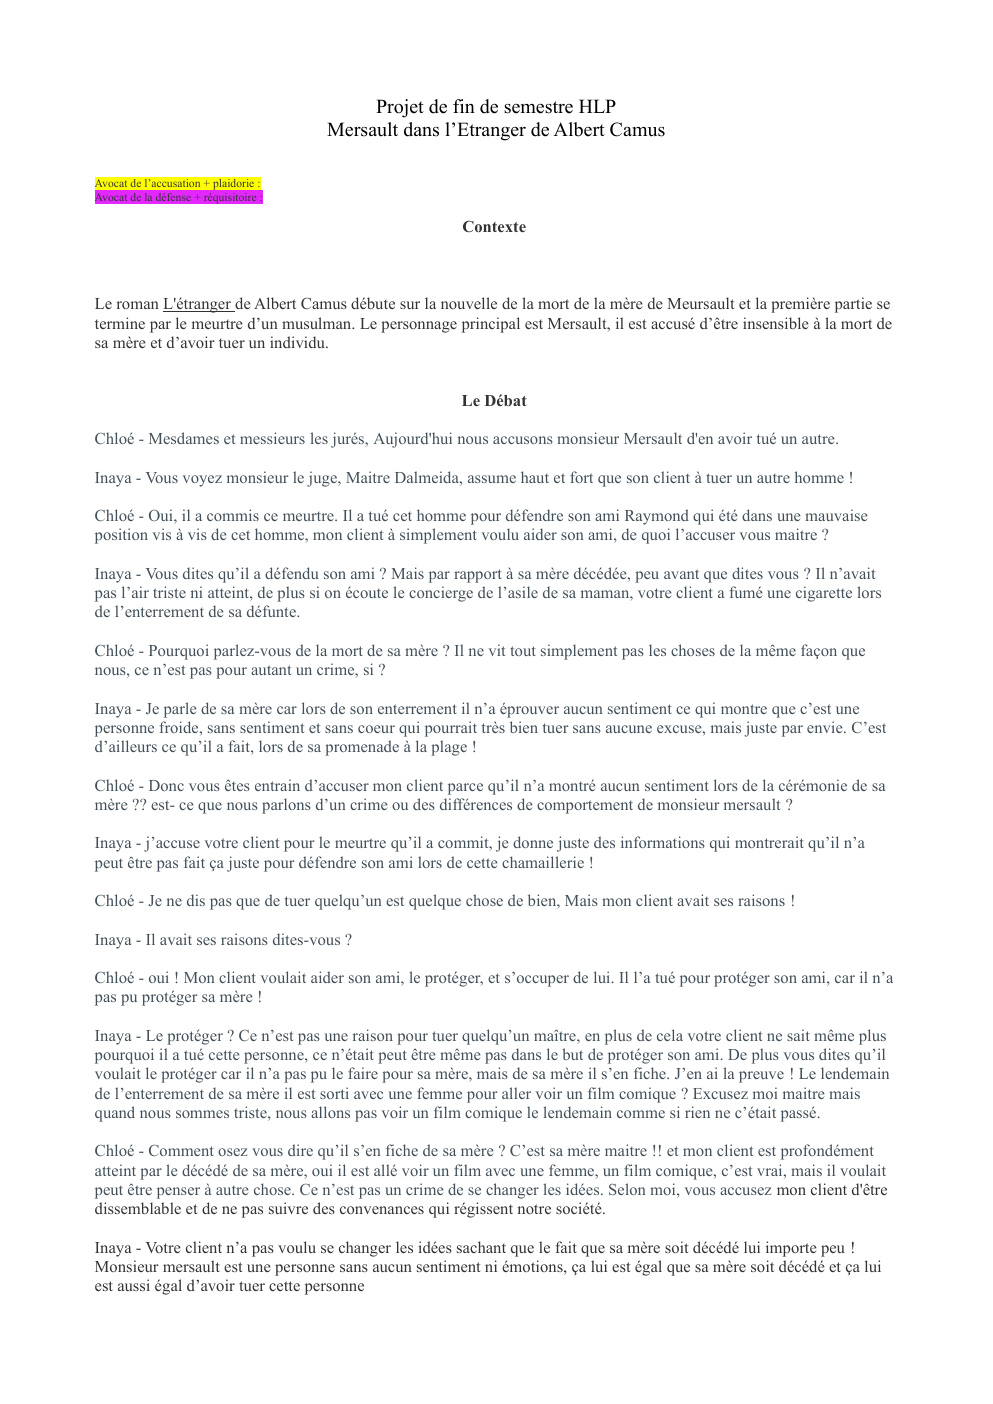 Prévisualisation du document Projet de fin de semestre HLP Mersault dans l’Etranger de Albert Camus Avocat de l’accusation + plaidorie : Avocat de la défense + réquisitoire